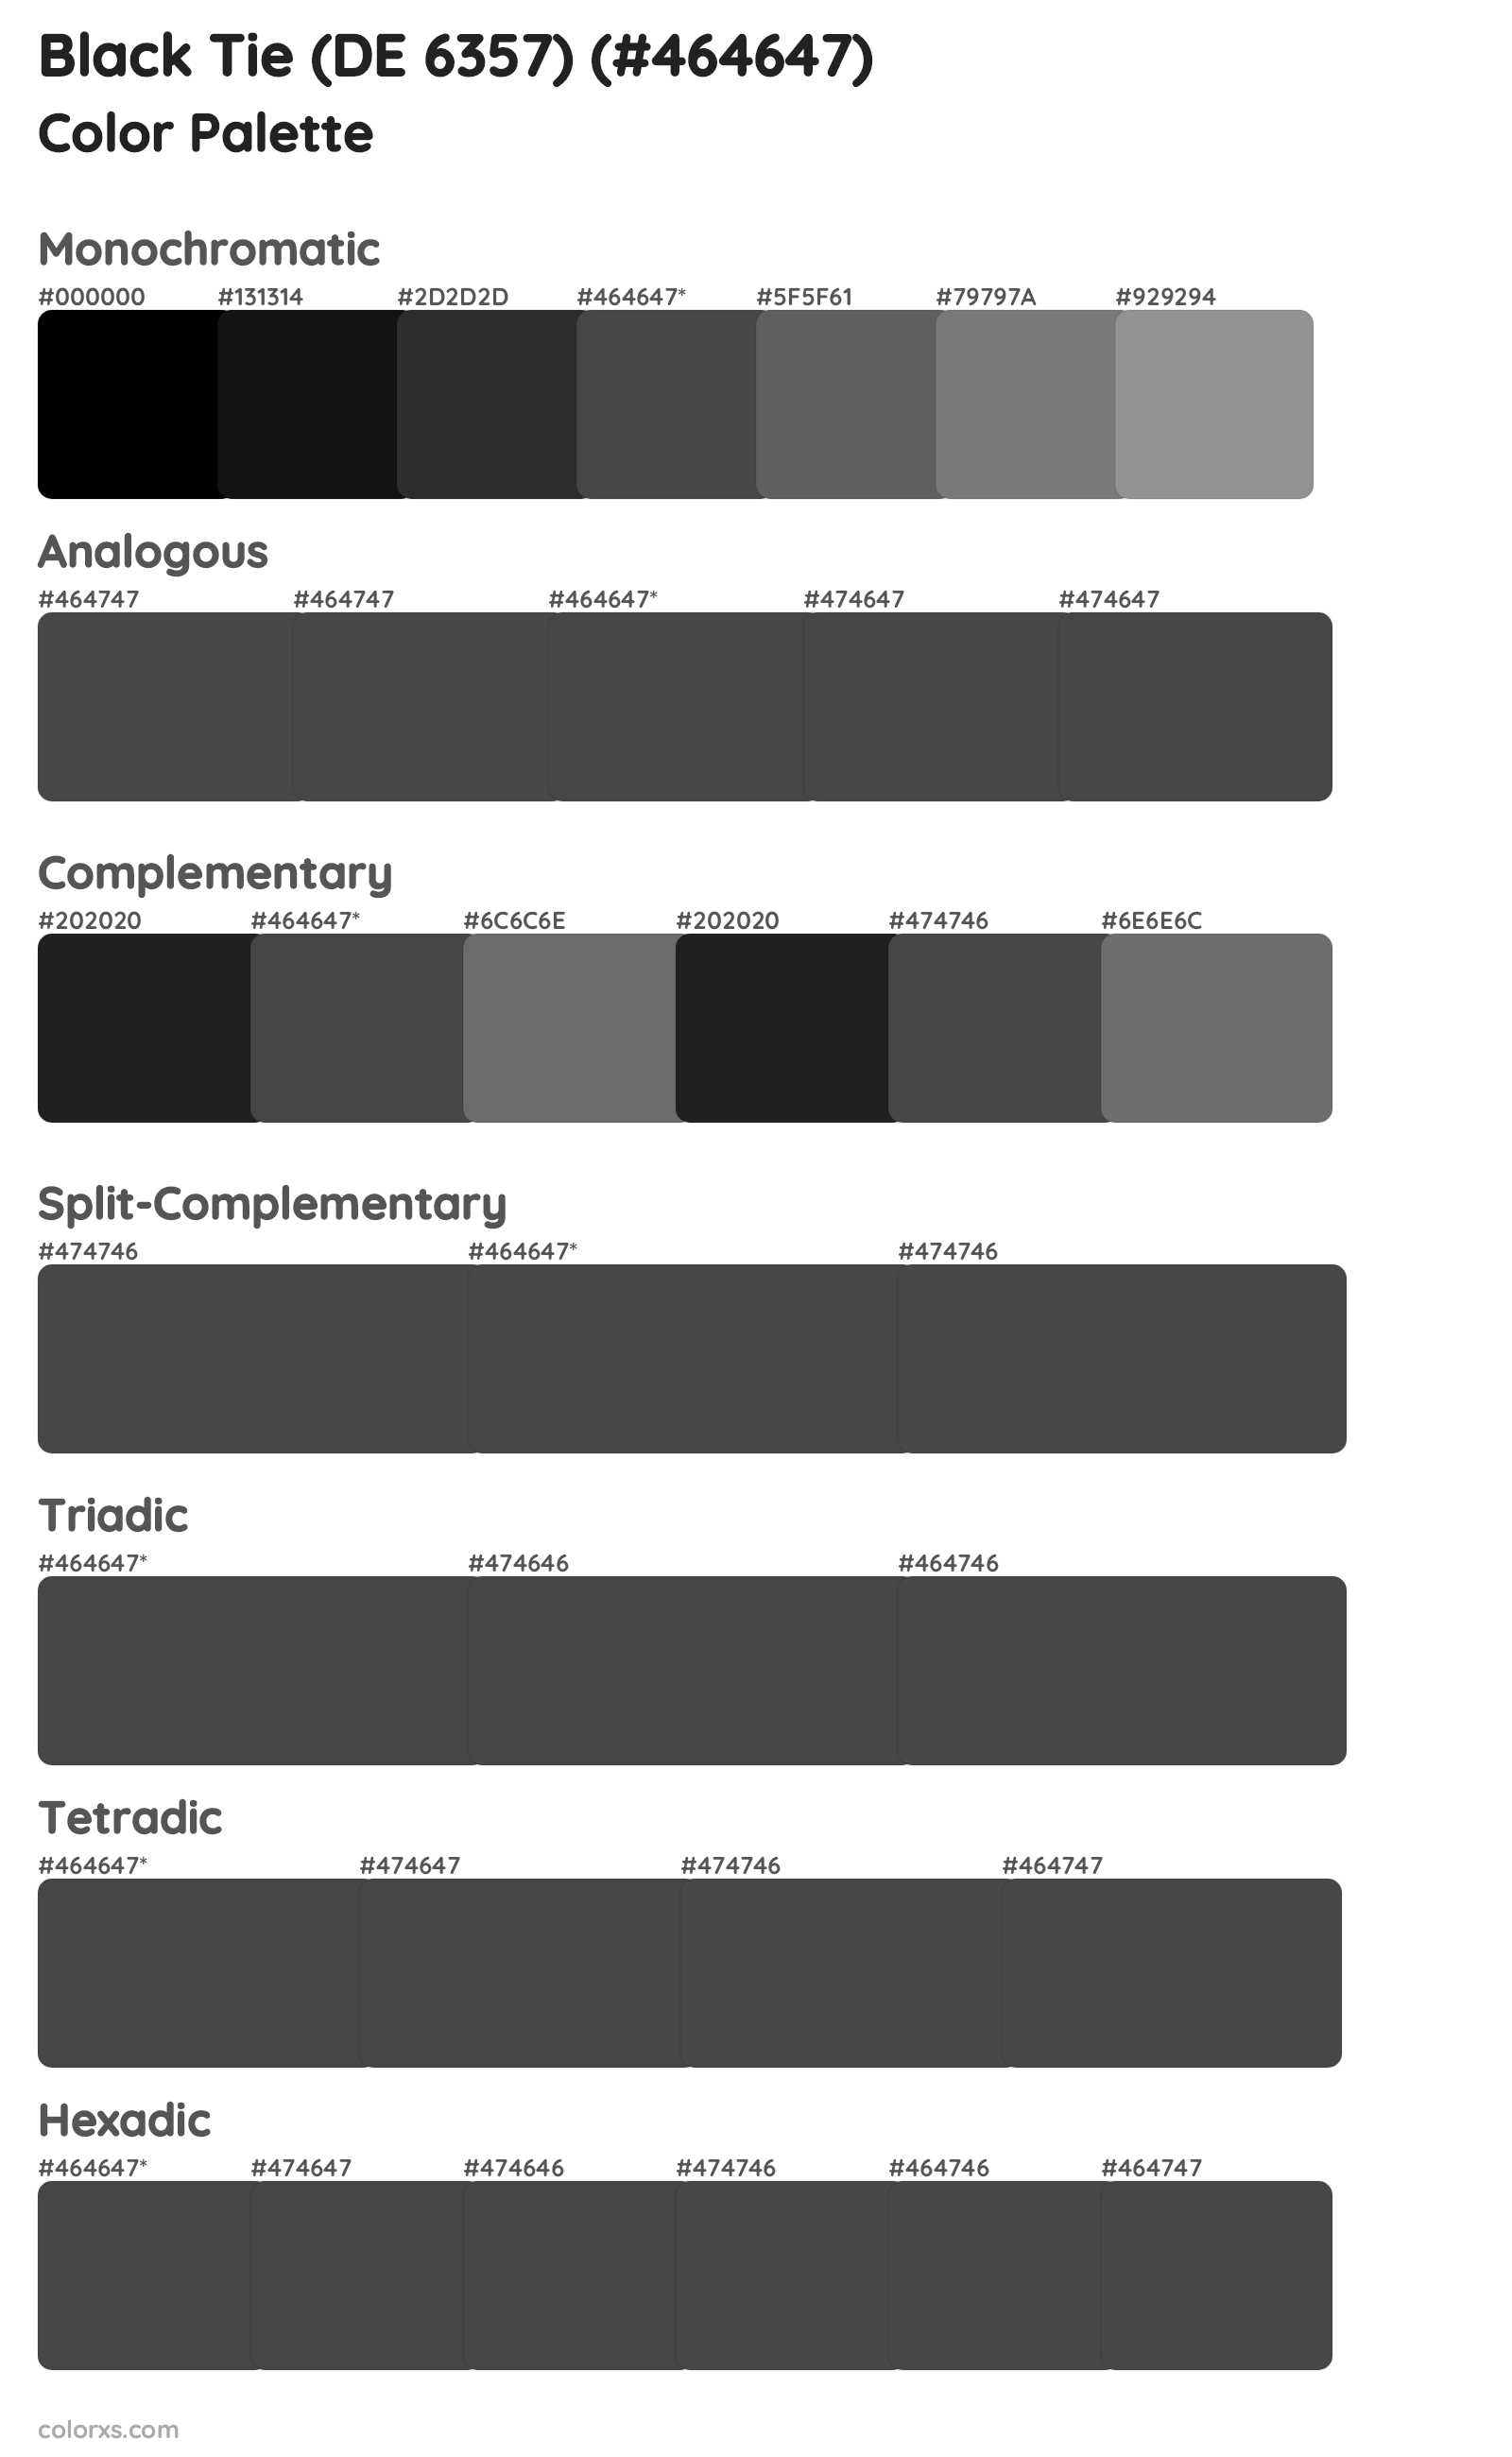 Black Tie (DE 6357) Color Scheme Palettes